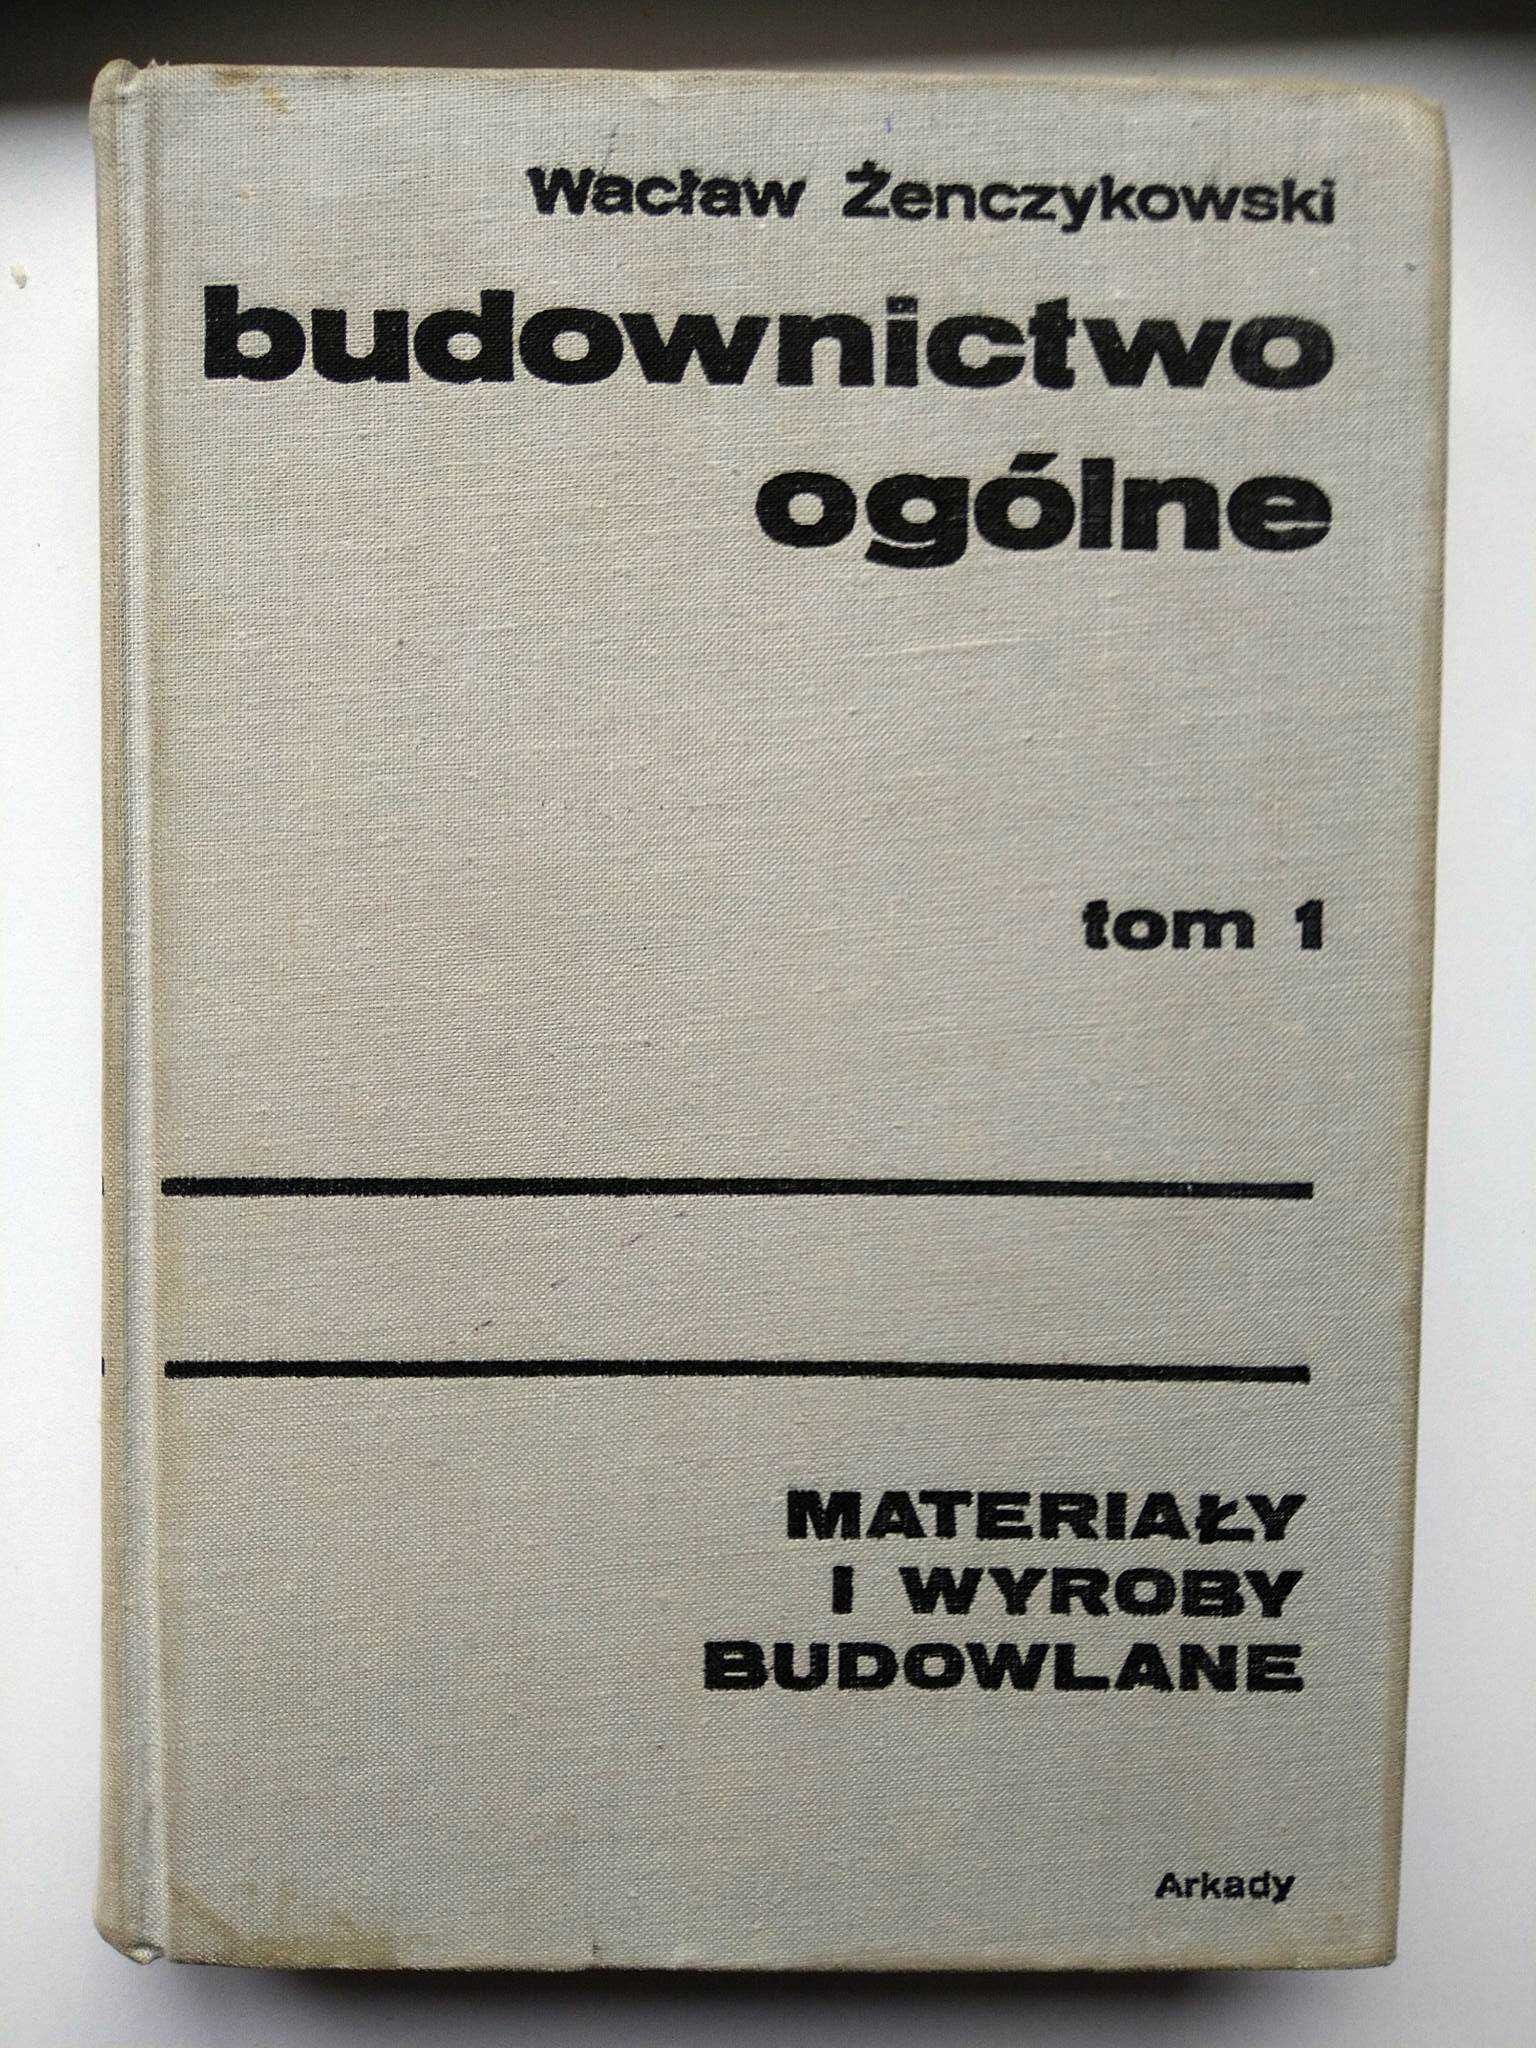 Budownictwo ogólne tom 1 Wacław Żenczykowski